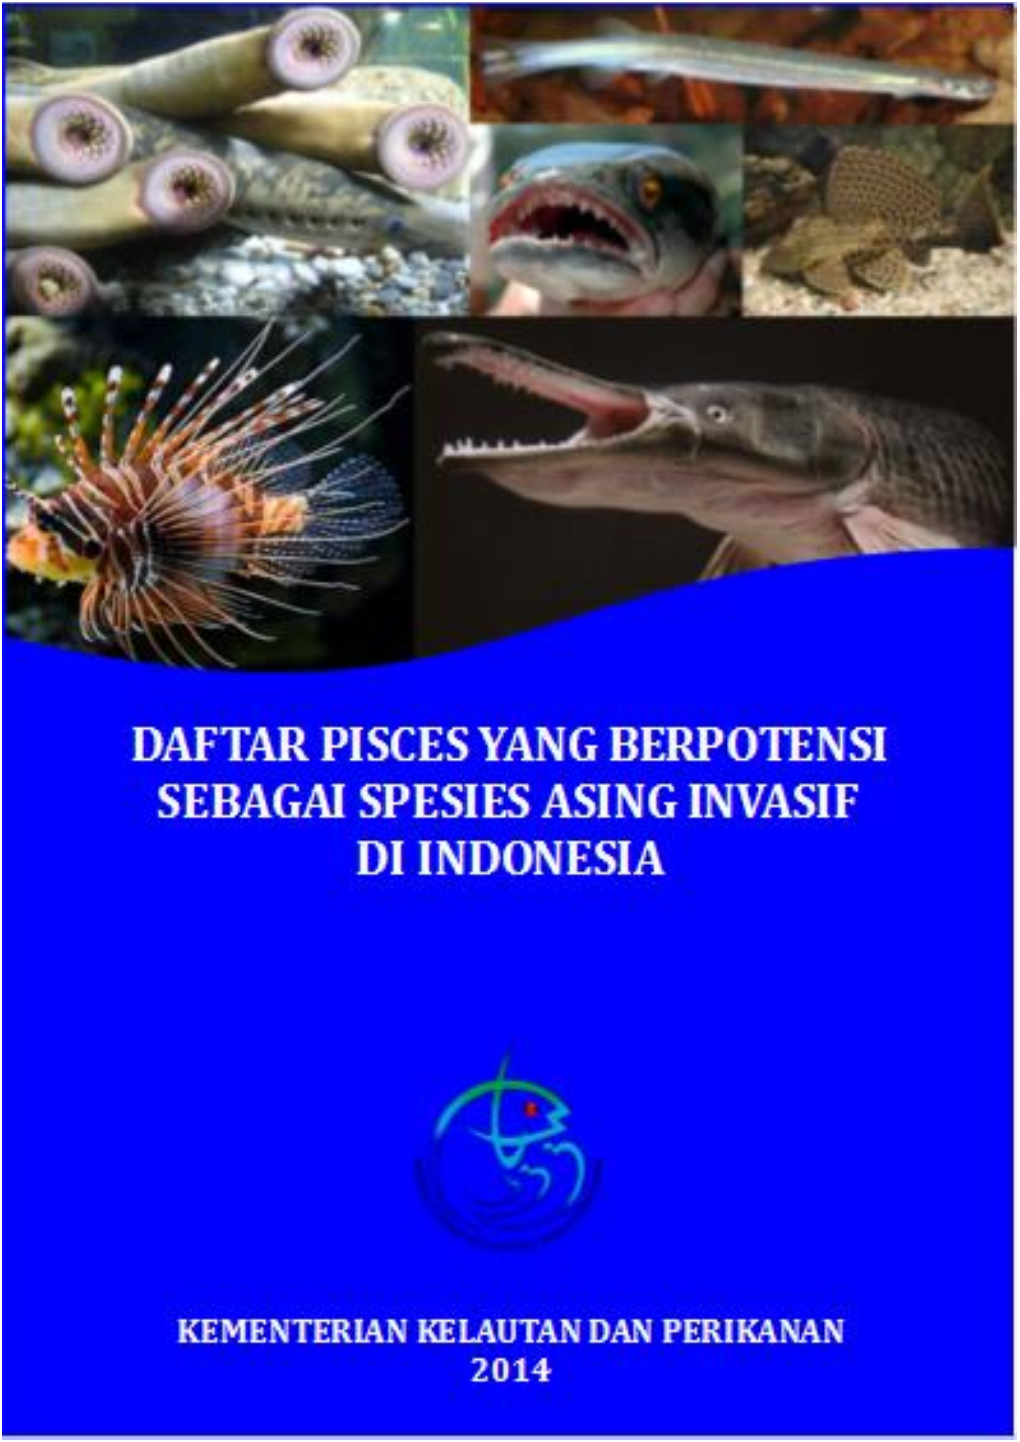 Daftar Pisces Yang Berpotensi Sebagai Spesies Asing Invasif Di Indonesia